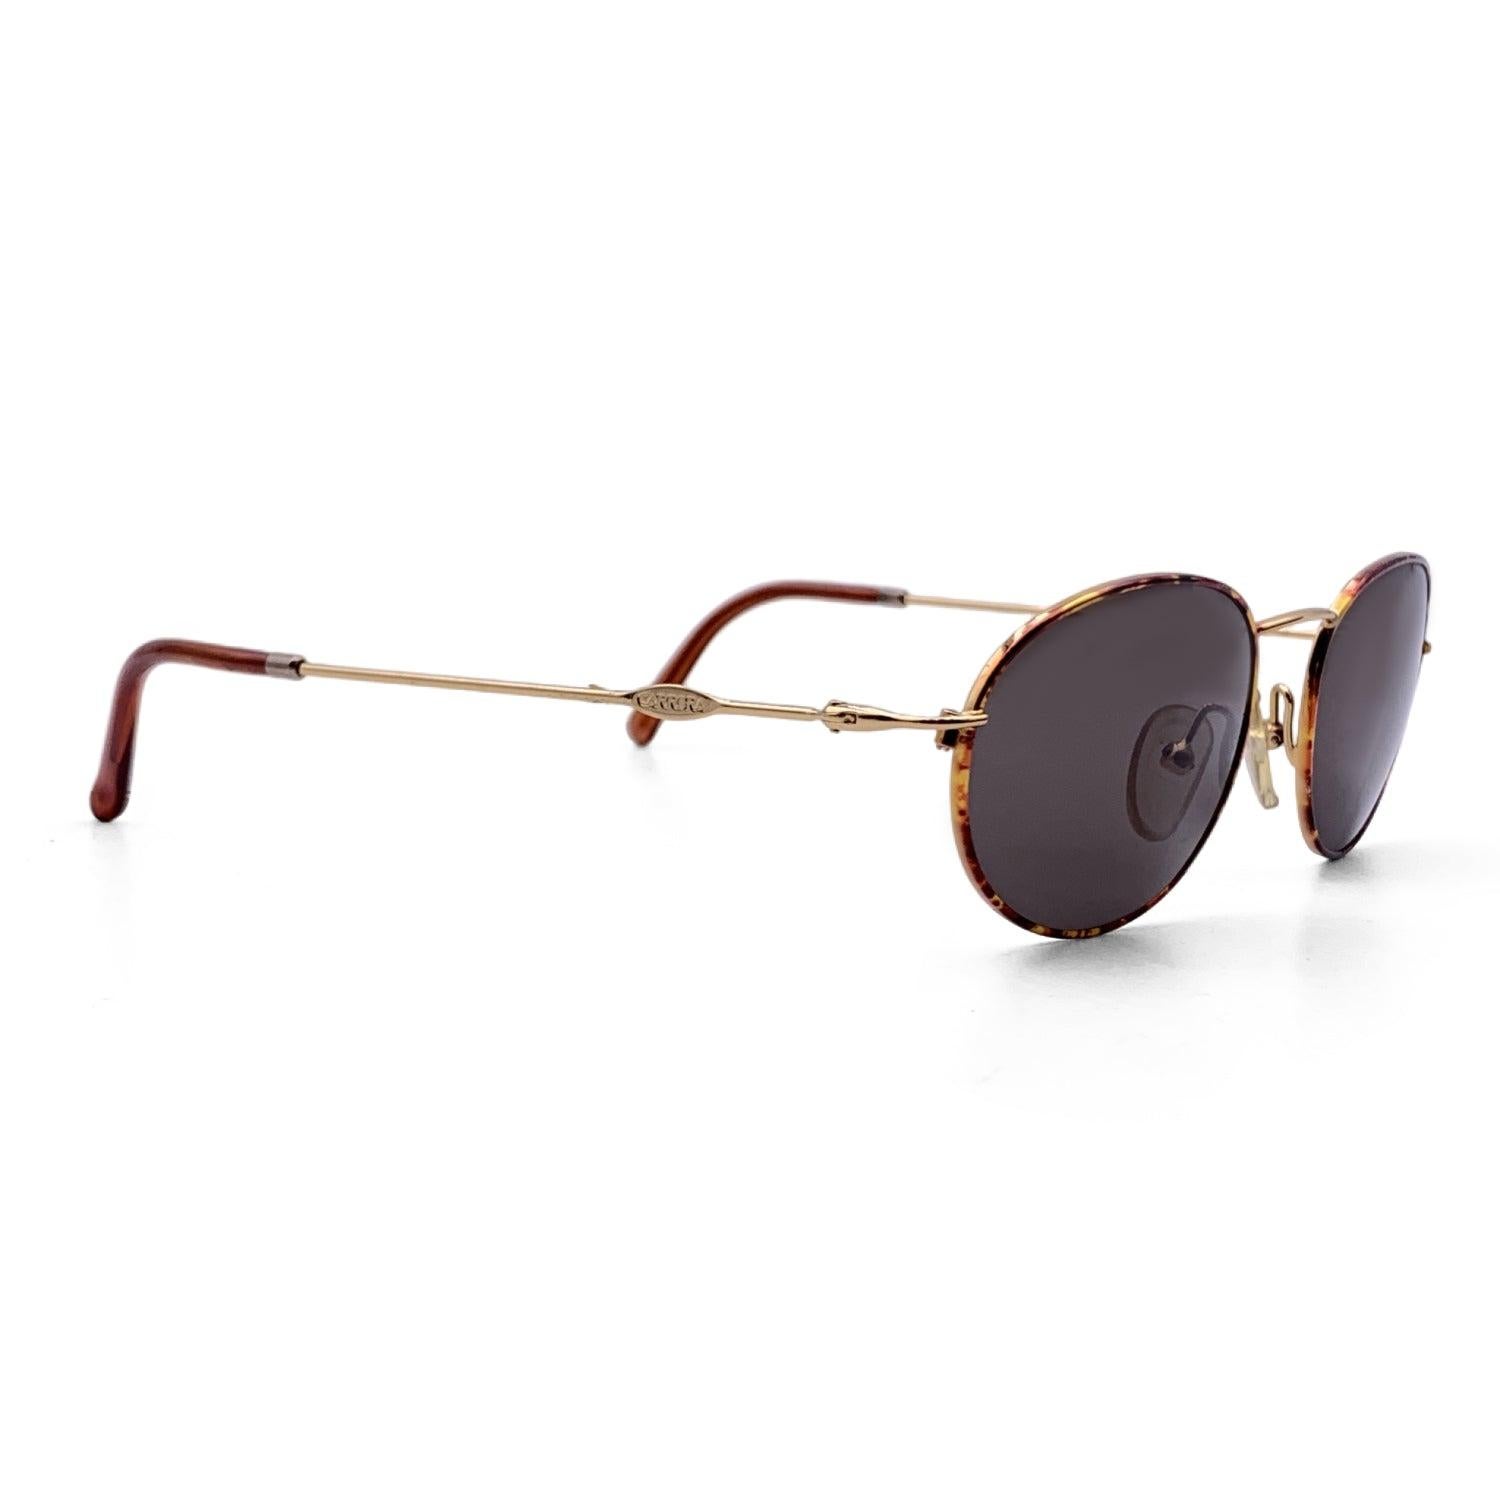 Gray Carrera Vintage Oval Unisex Vintage Sunglasses 5522 41 53/19 140mm